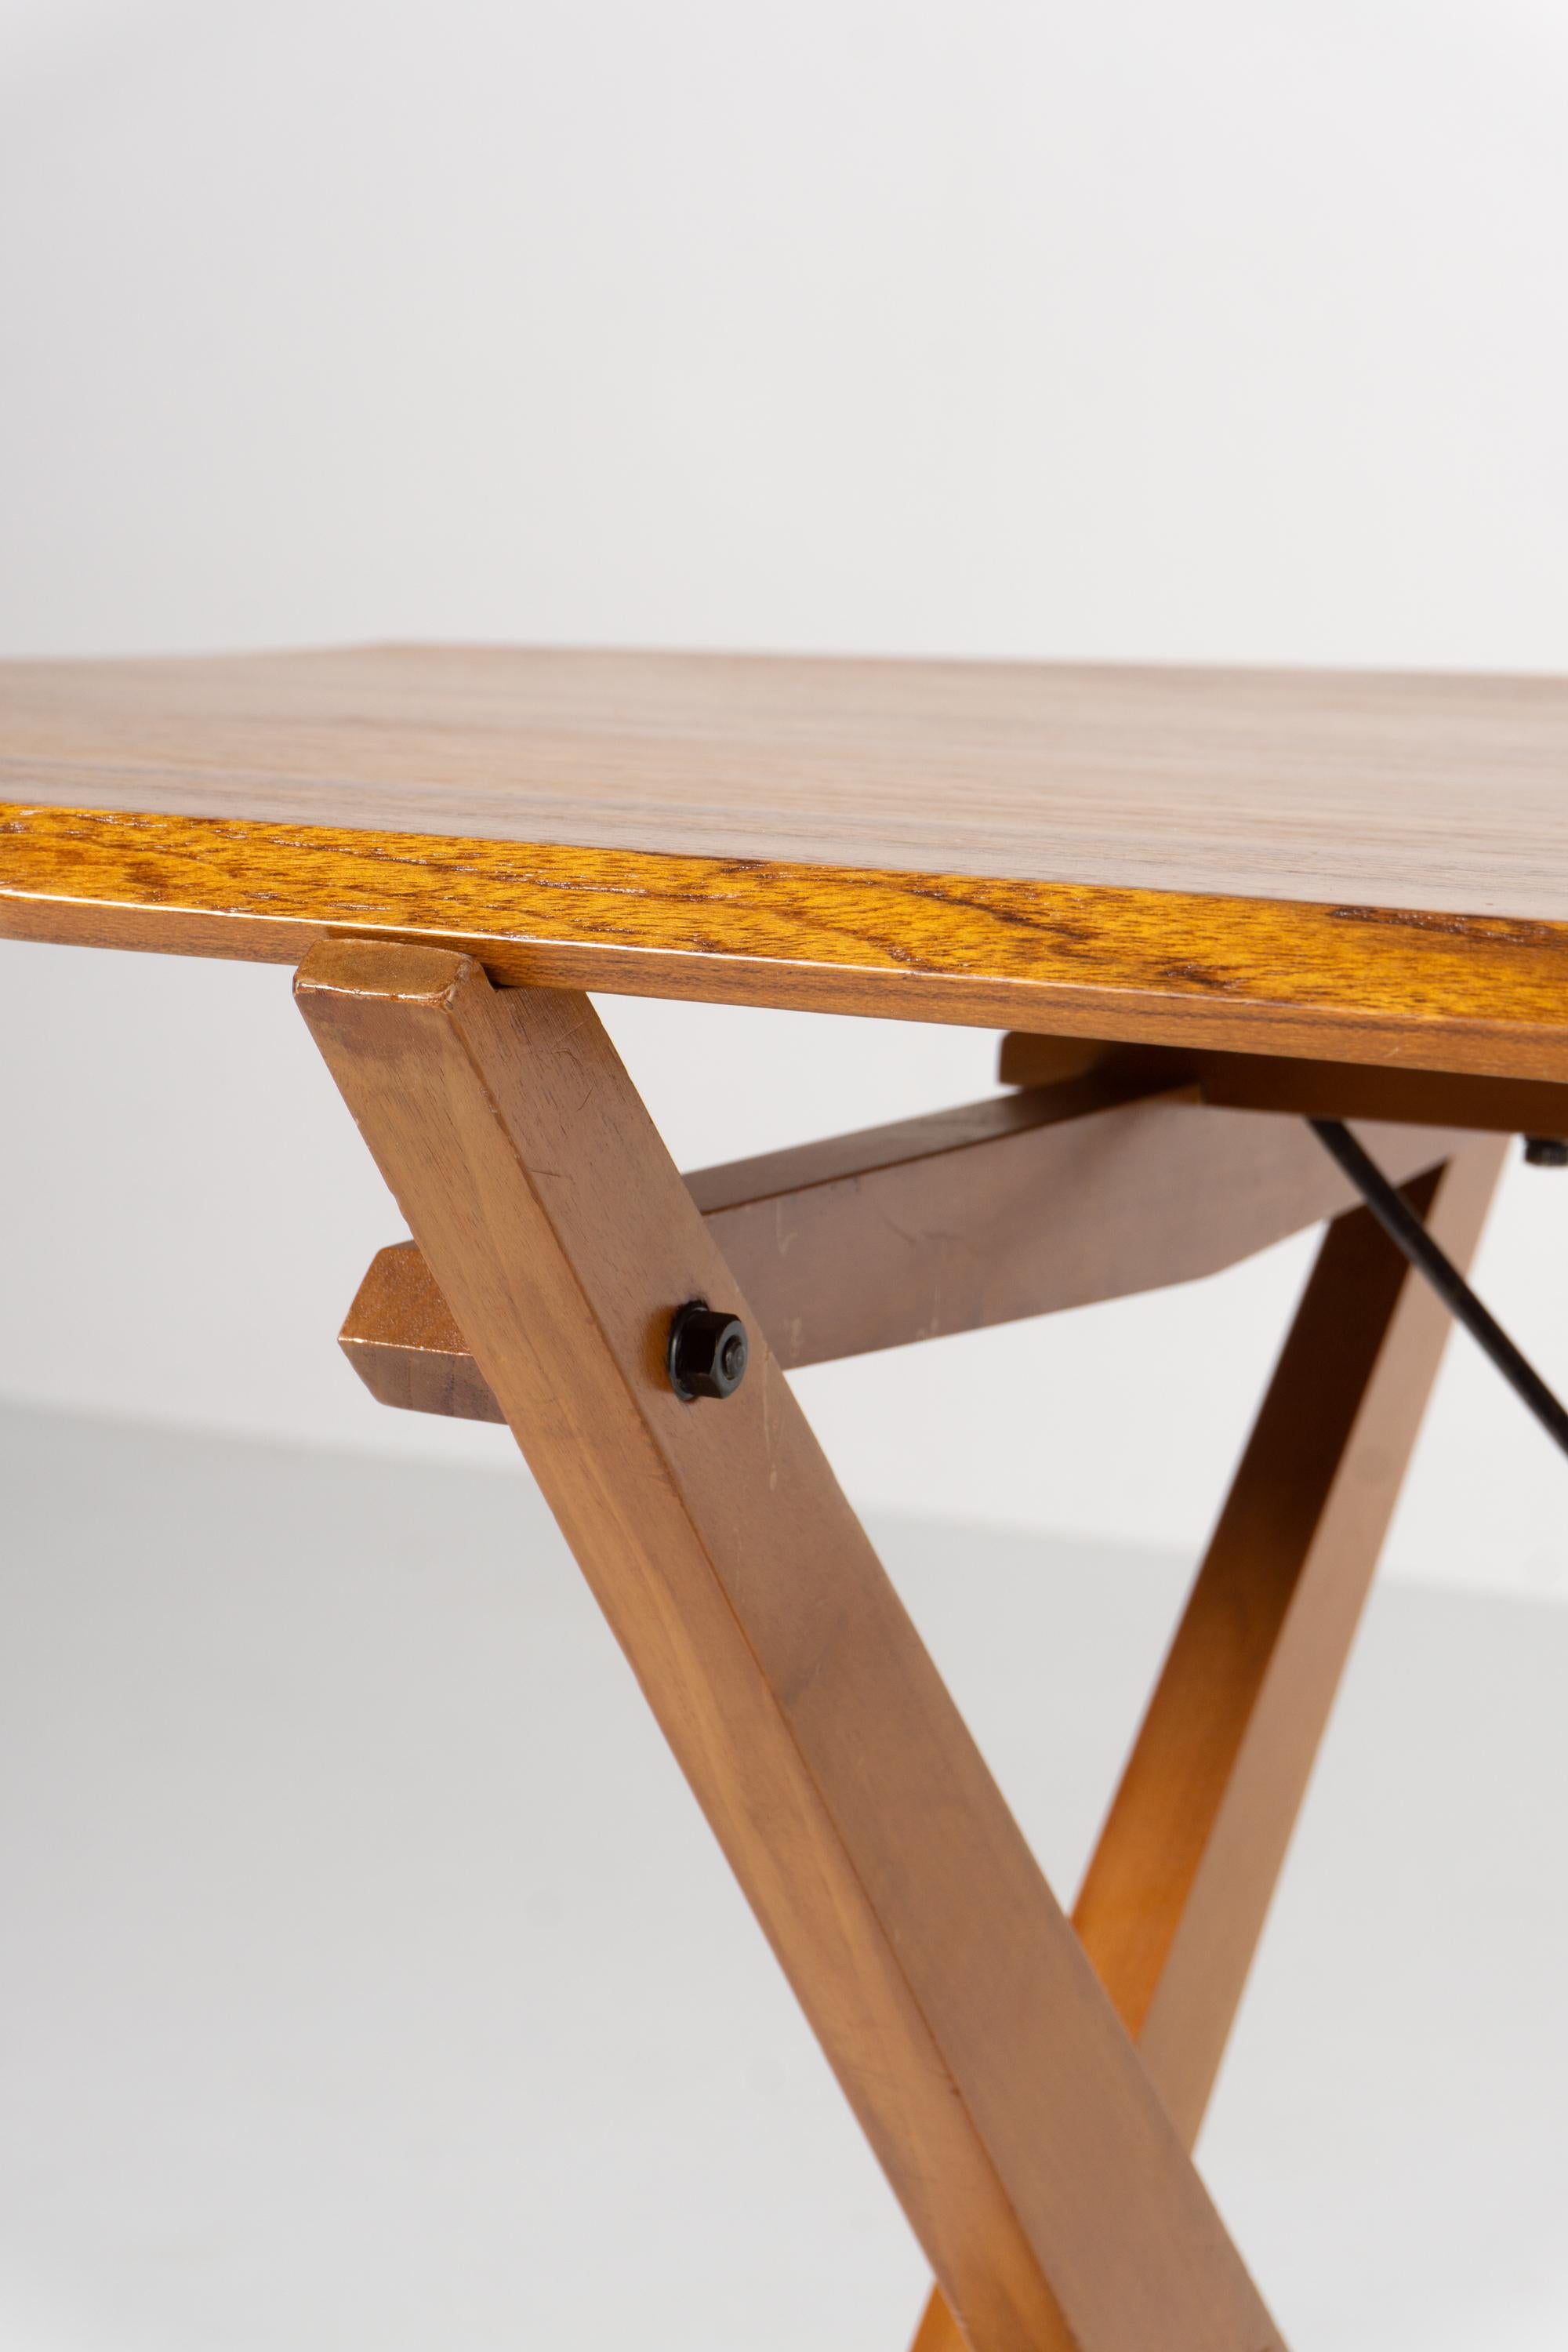 La particularité de cette table est son plateau en bois massif.
Cette table gracieuse de l'architecte et designer italien Franco Albini a été conçue en 1951. Le modèle, connu sous le nom de 